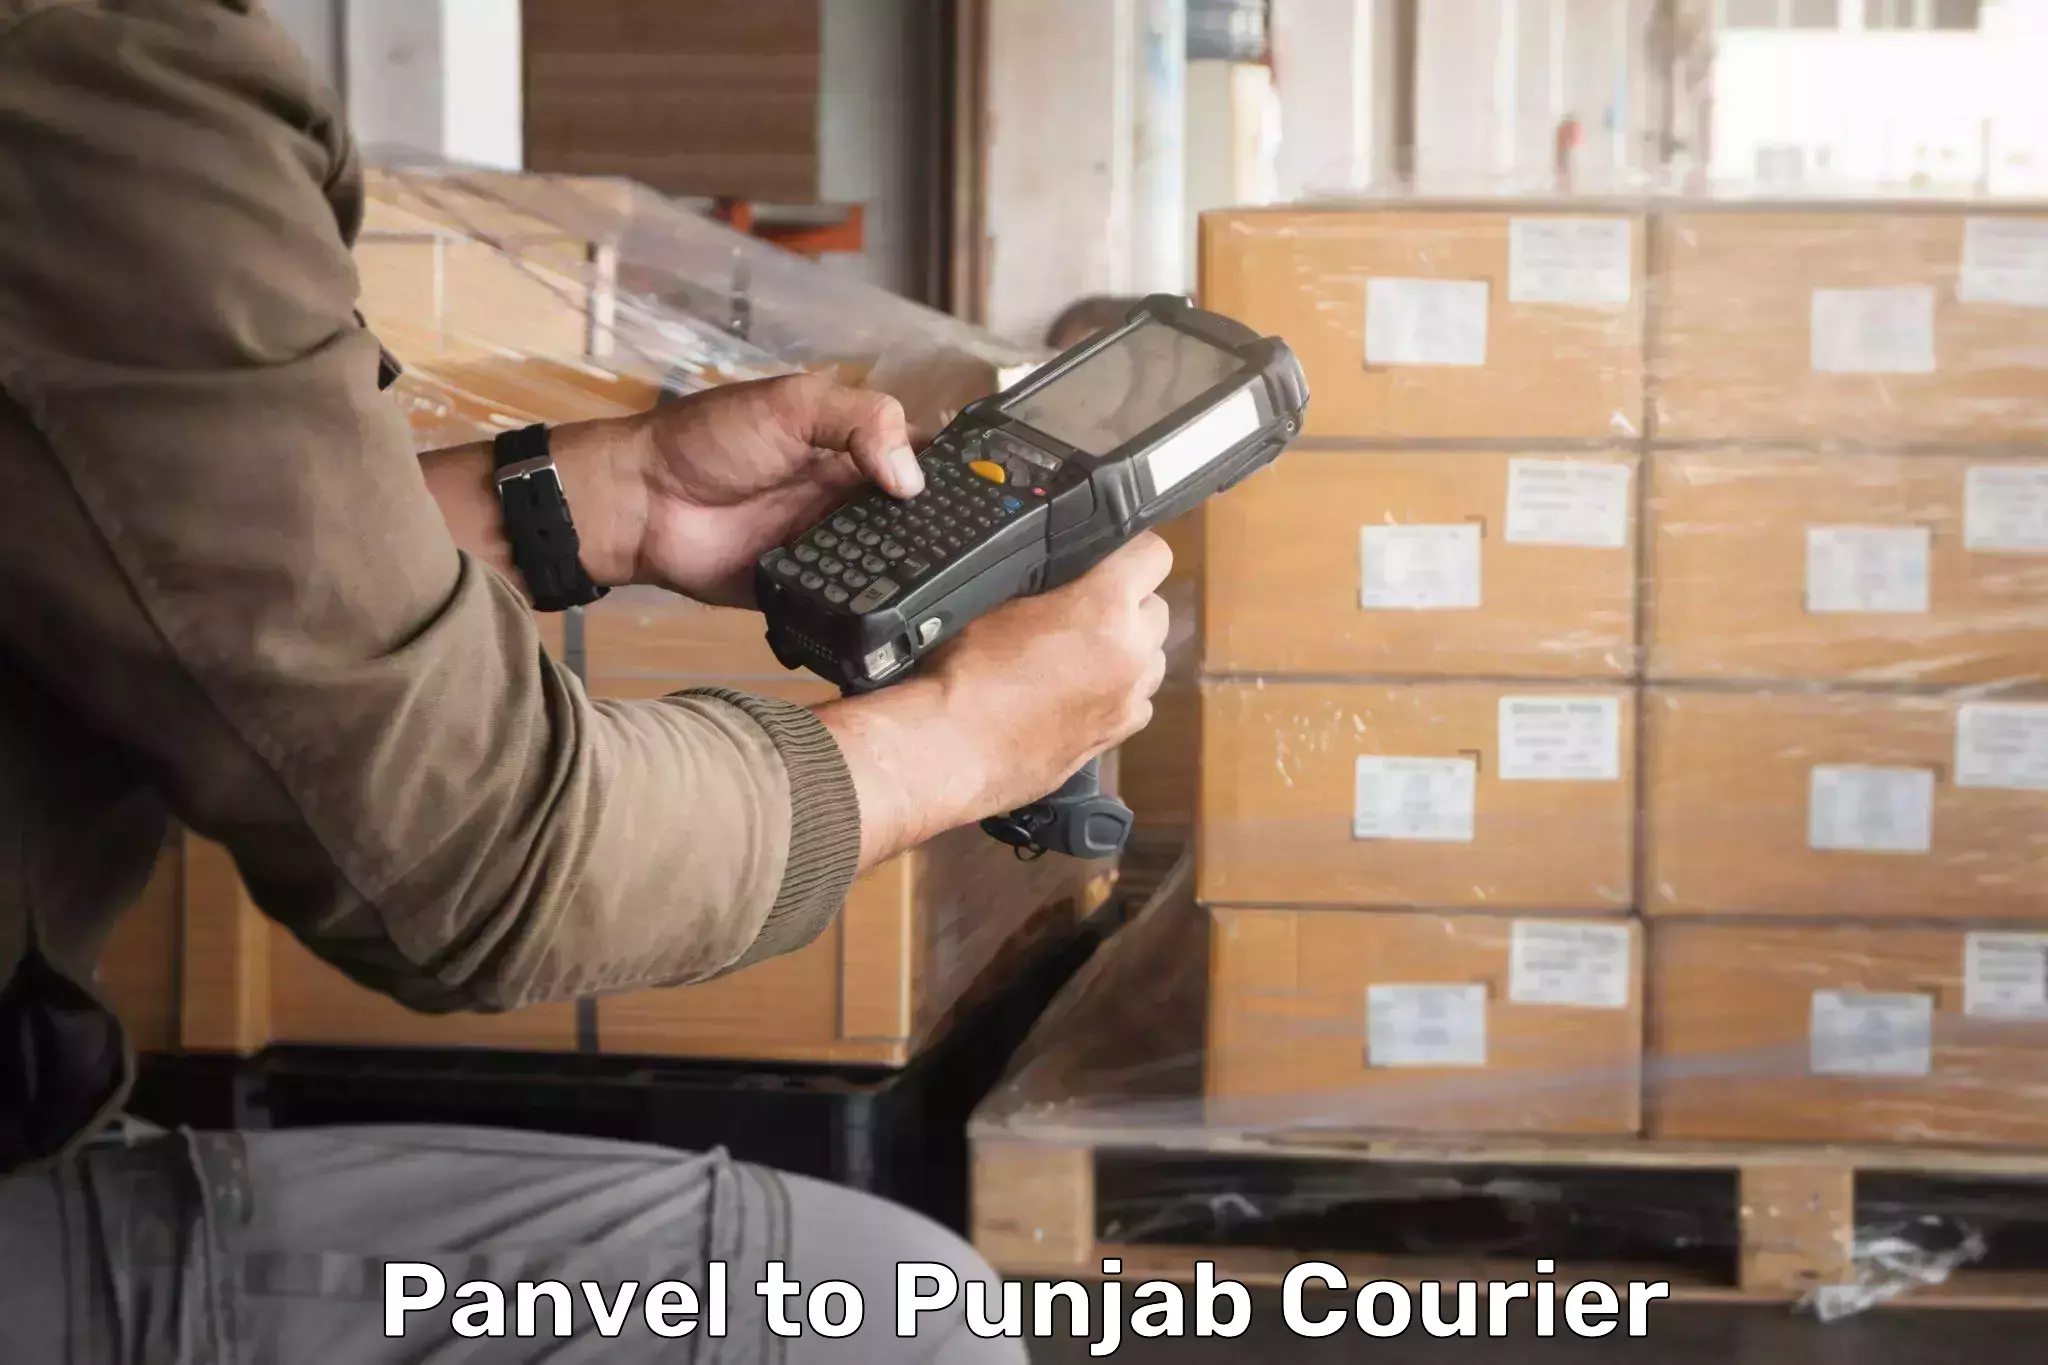 Courier service comparison Panvel to Phillaur